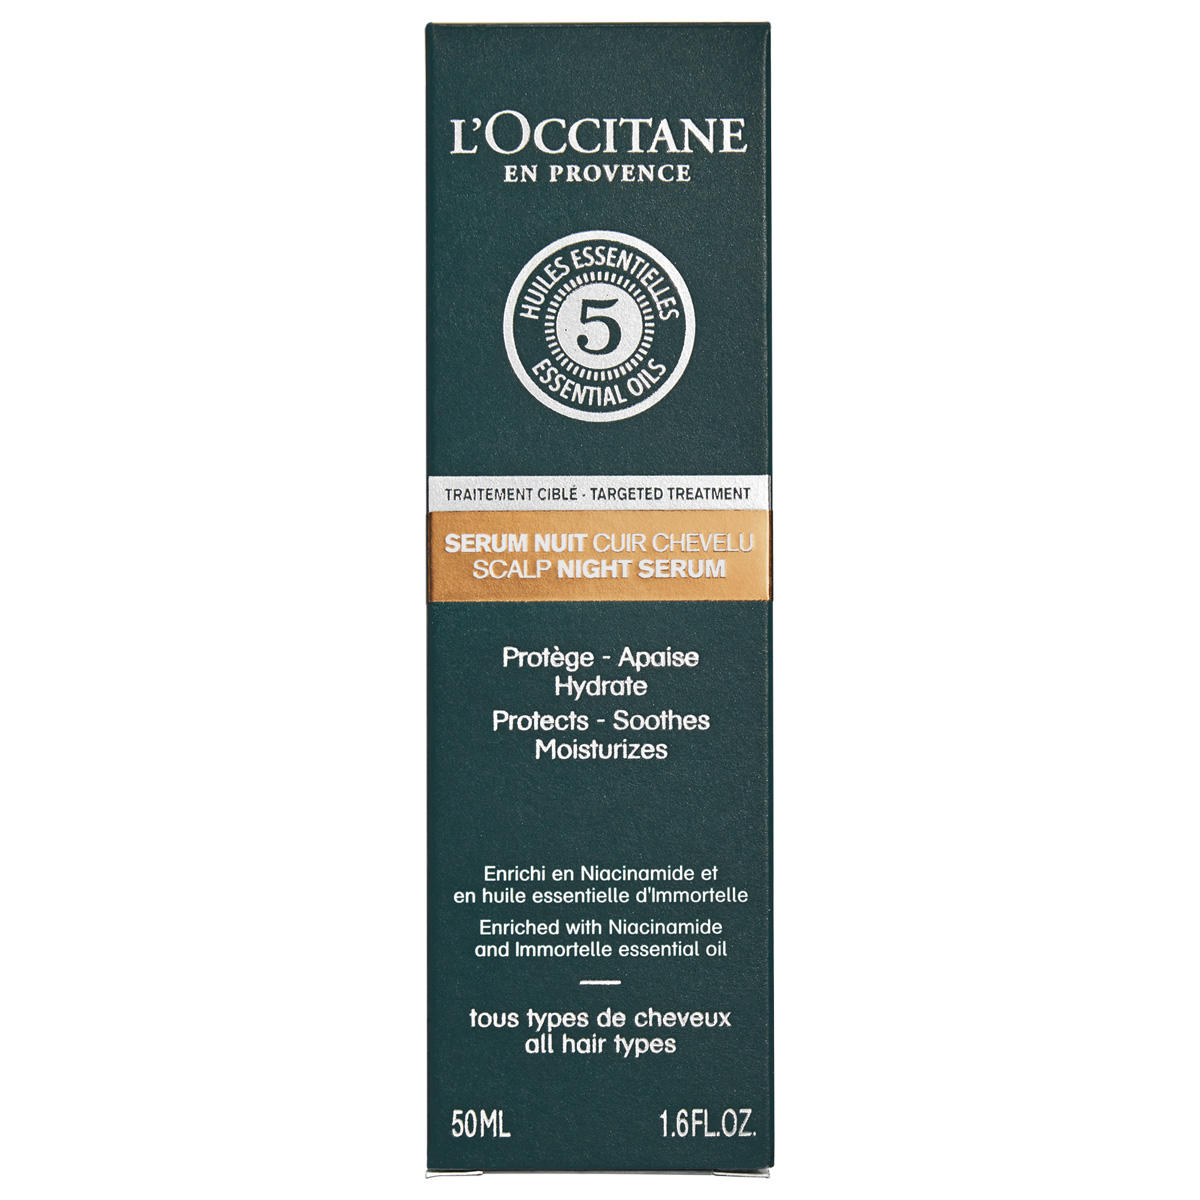 L'Occitane Overnachtingsserum voor de hoofdhuid 50 ml - 2